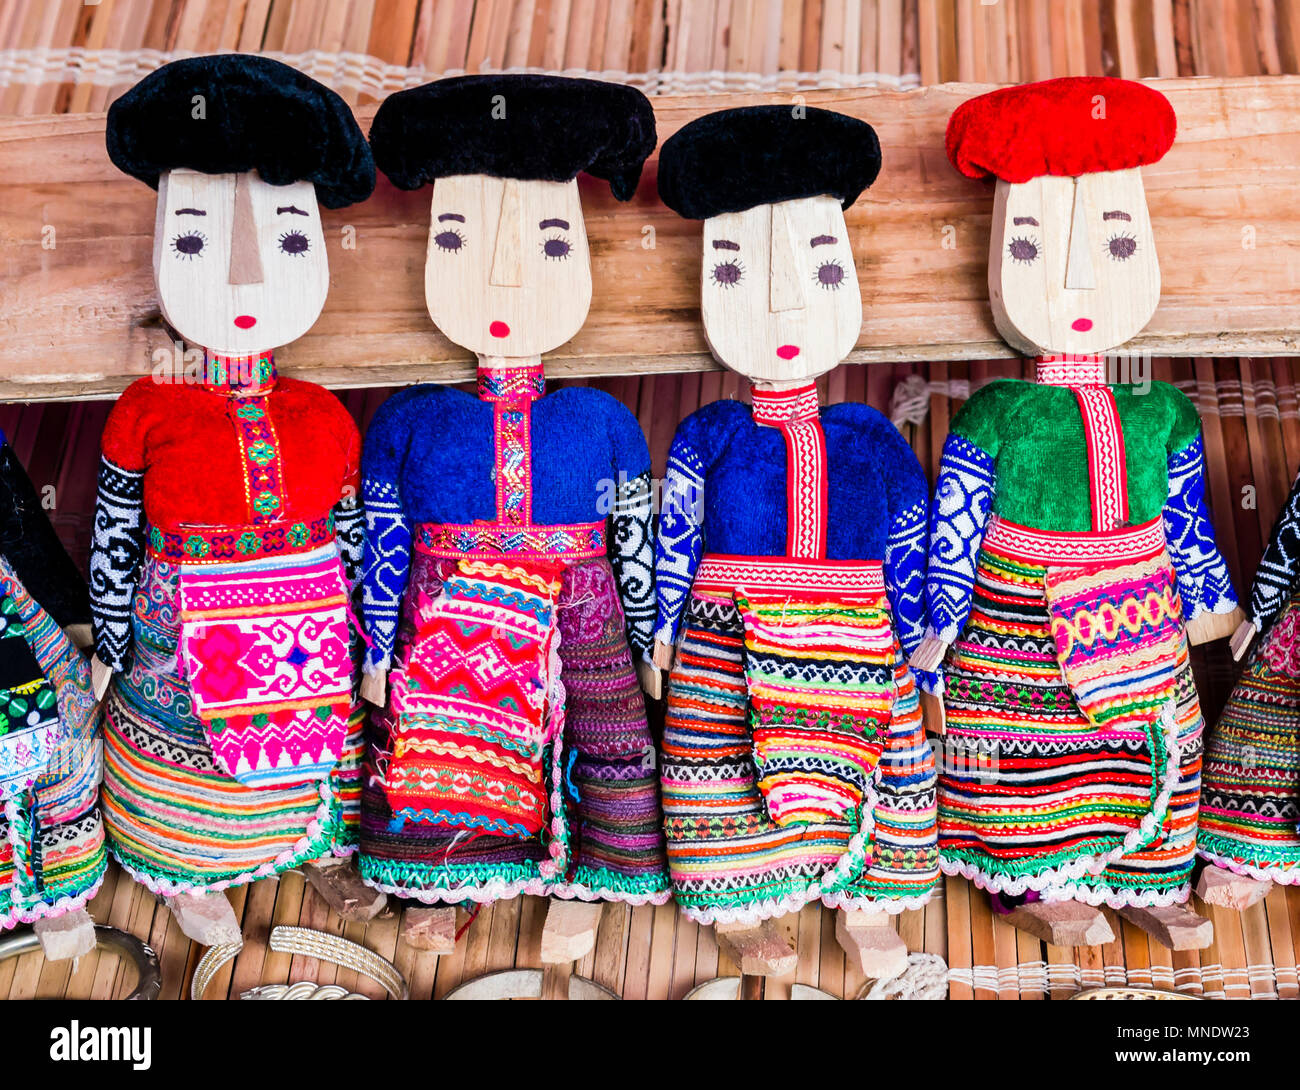 Reihe von schwarzen und roten Dzao Puppen aus Holz in traditioneller Kleidung, können Cau Markt, Northern Vietnam Stockfoto